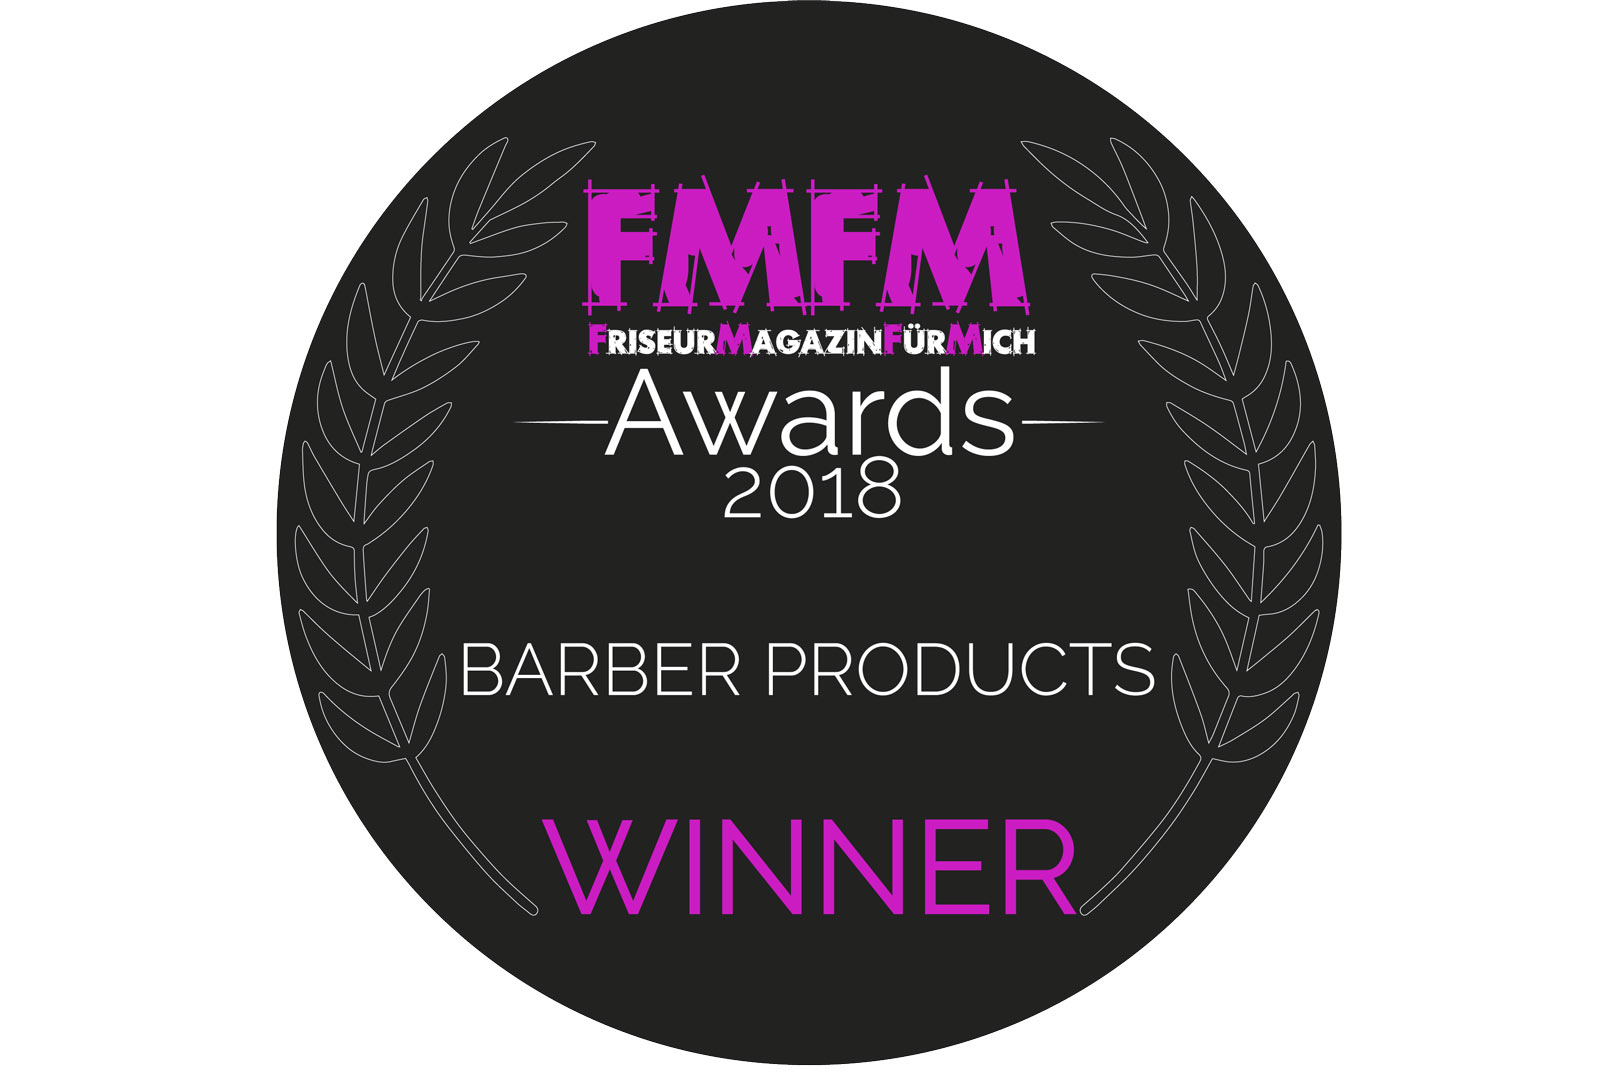 Das-sind-die-Sieger-der-FMFM-Barber-Product-Awards-2018-2741-1